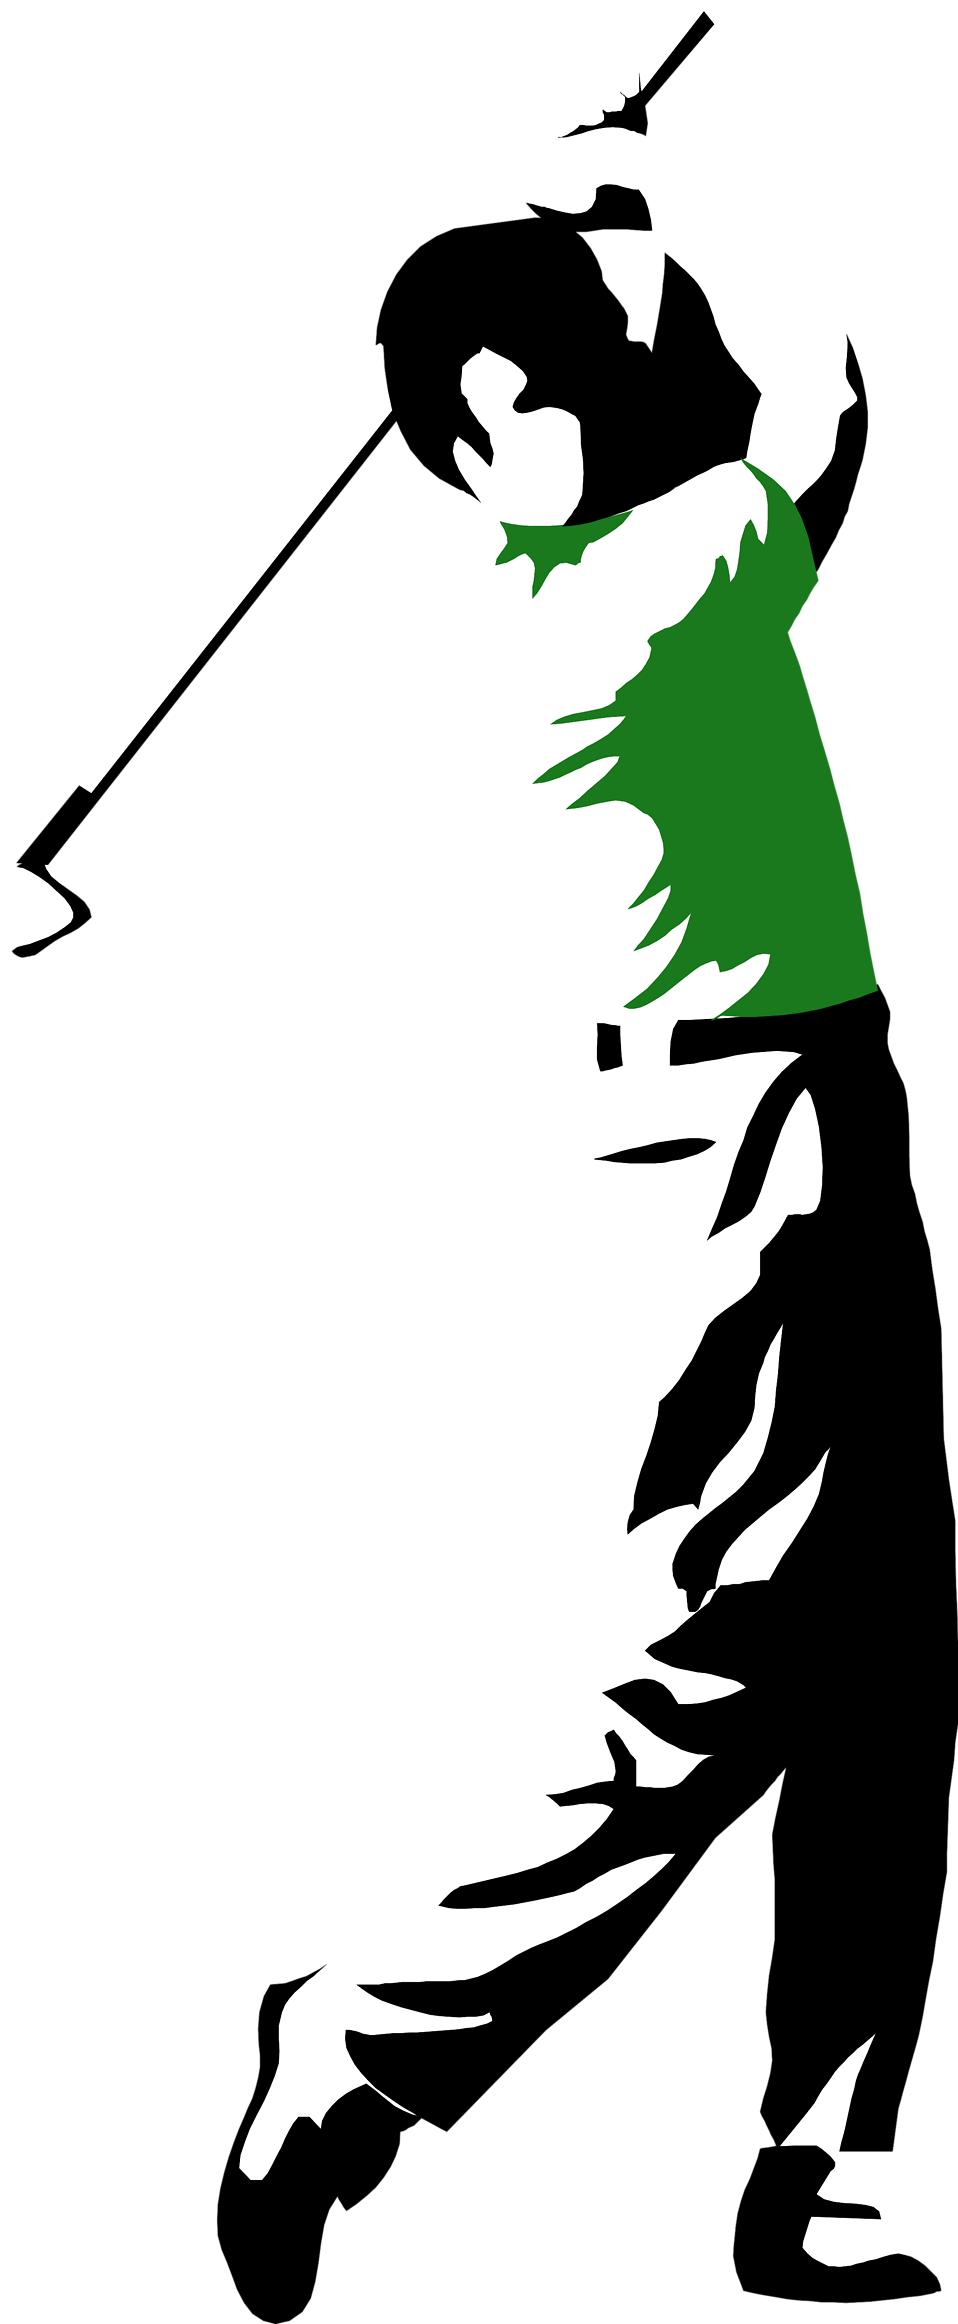 Retro clipart golf, Retro golf Transparent FREE for download